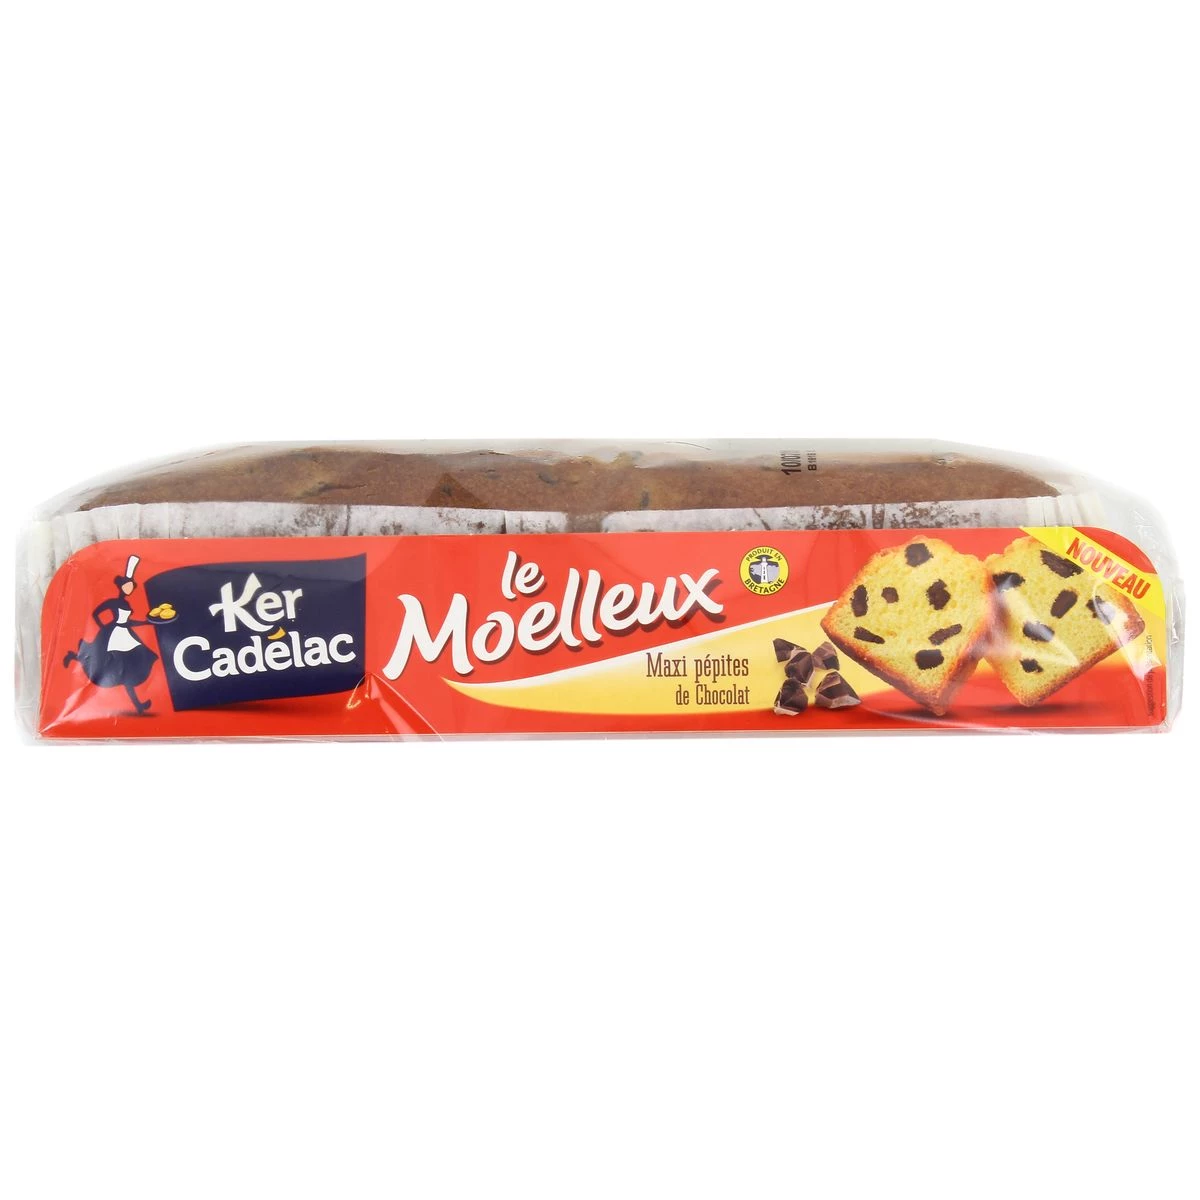 Moelleux Maxi Pépite Chocolat 500g - KER CADELAC